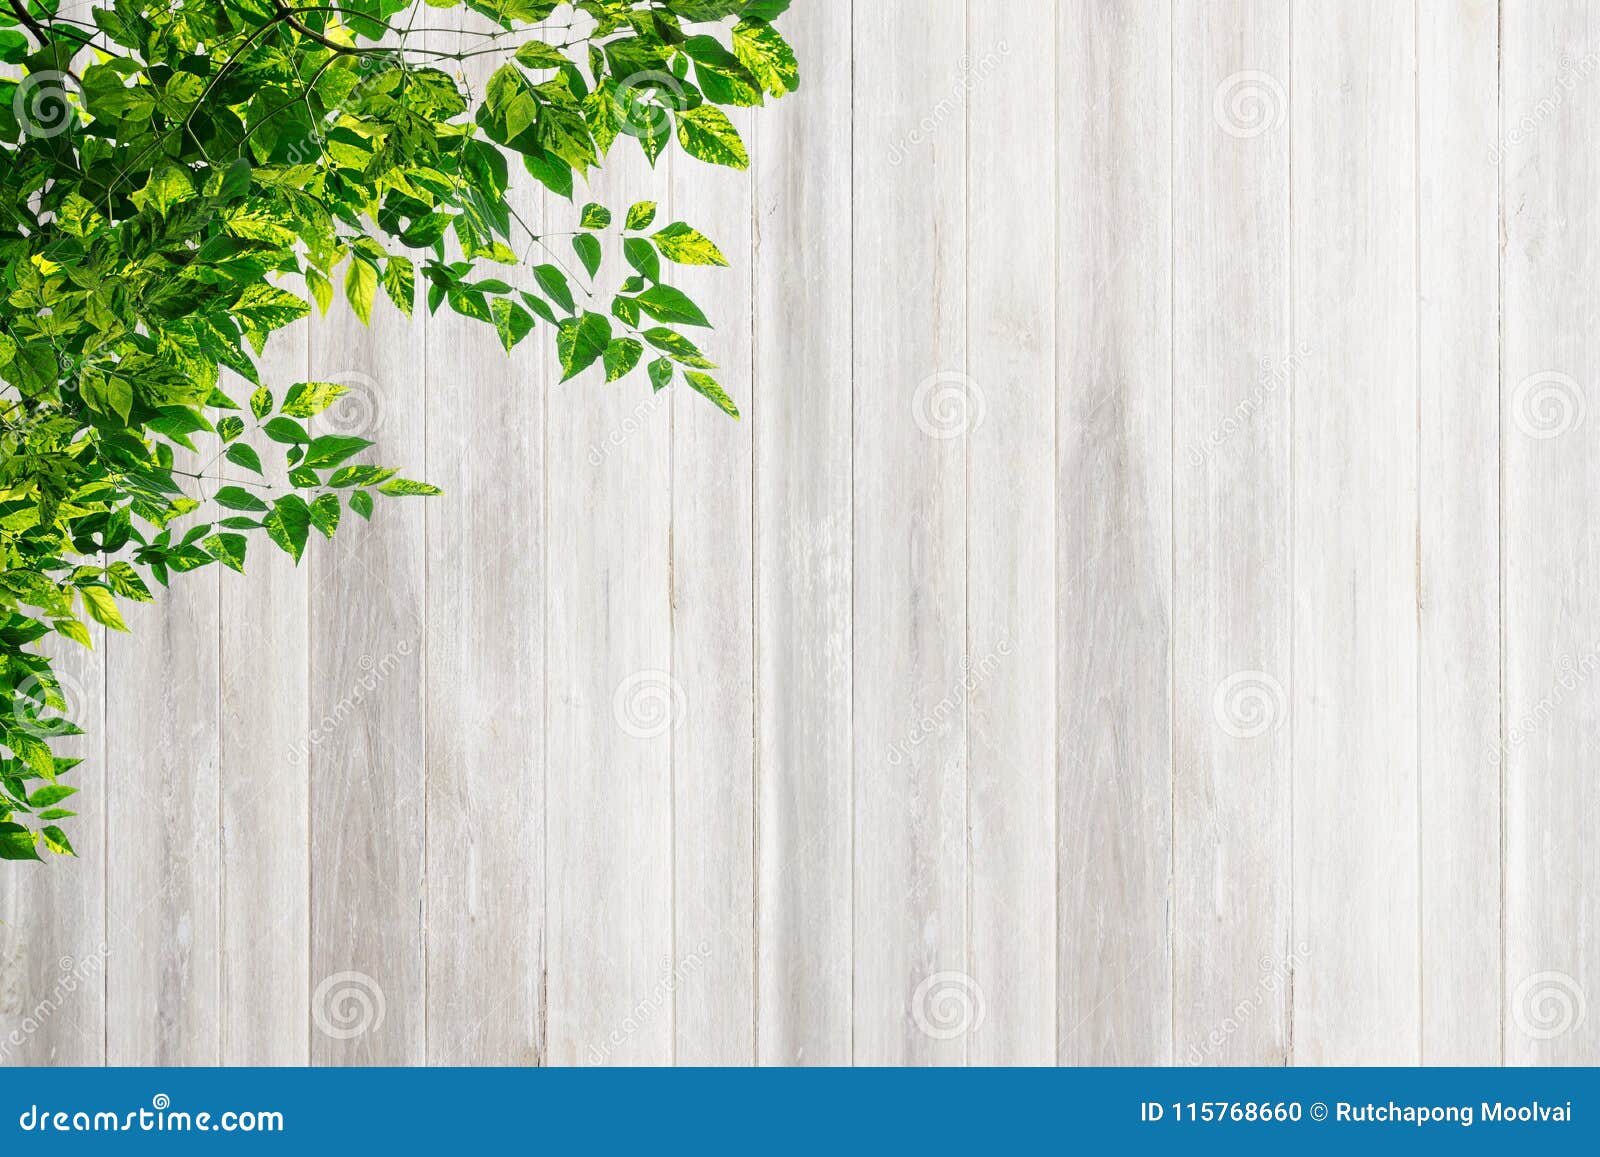 Tường gỗ là một sự lựa chọn tuyệt vời để tạo ra một không gian nội thất ấm cúng và thuận tiện. Tường gỗ thường được sử dụng trong các ngôi nhà kiểu cổ điển hoặc kiểu đương đại để mang lại sự sang trọng và tổng thể cho không gian của bạn. Nếu bạn yêu thích các ý tưởng thiết kế nội thất độc đáo và muốn tìm hiểu thêm về tường gỗ, hãy xem hình ảnh liên quan đến từ khóa tường gỗ.